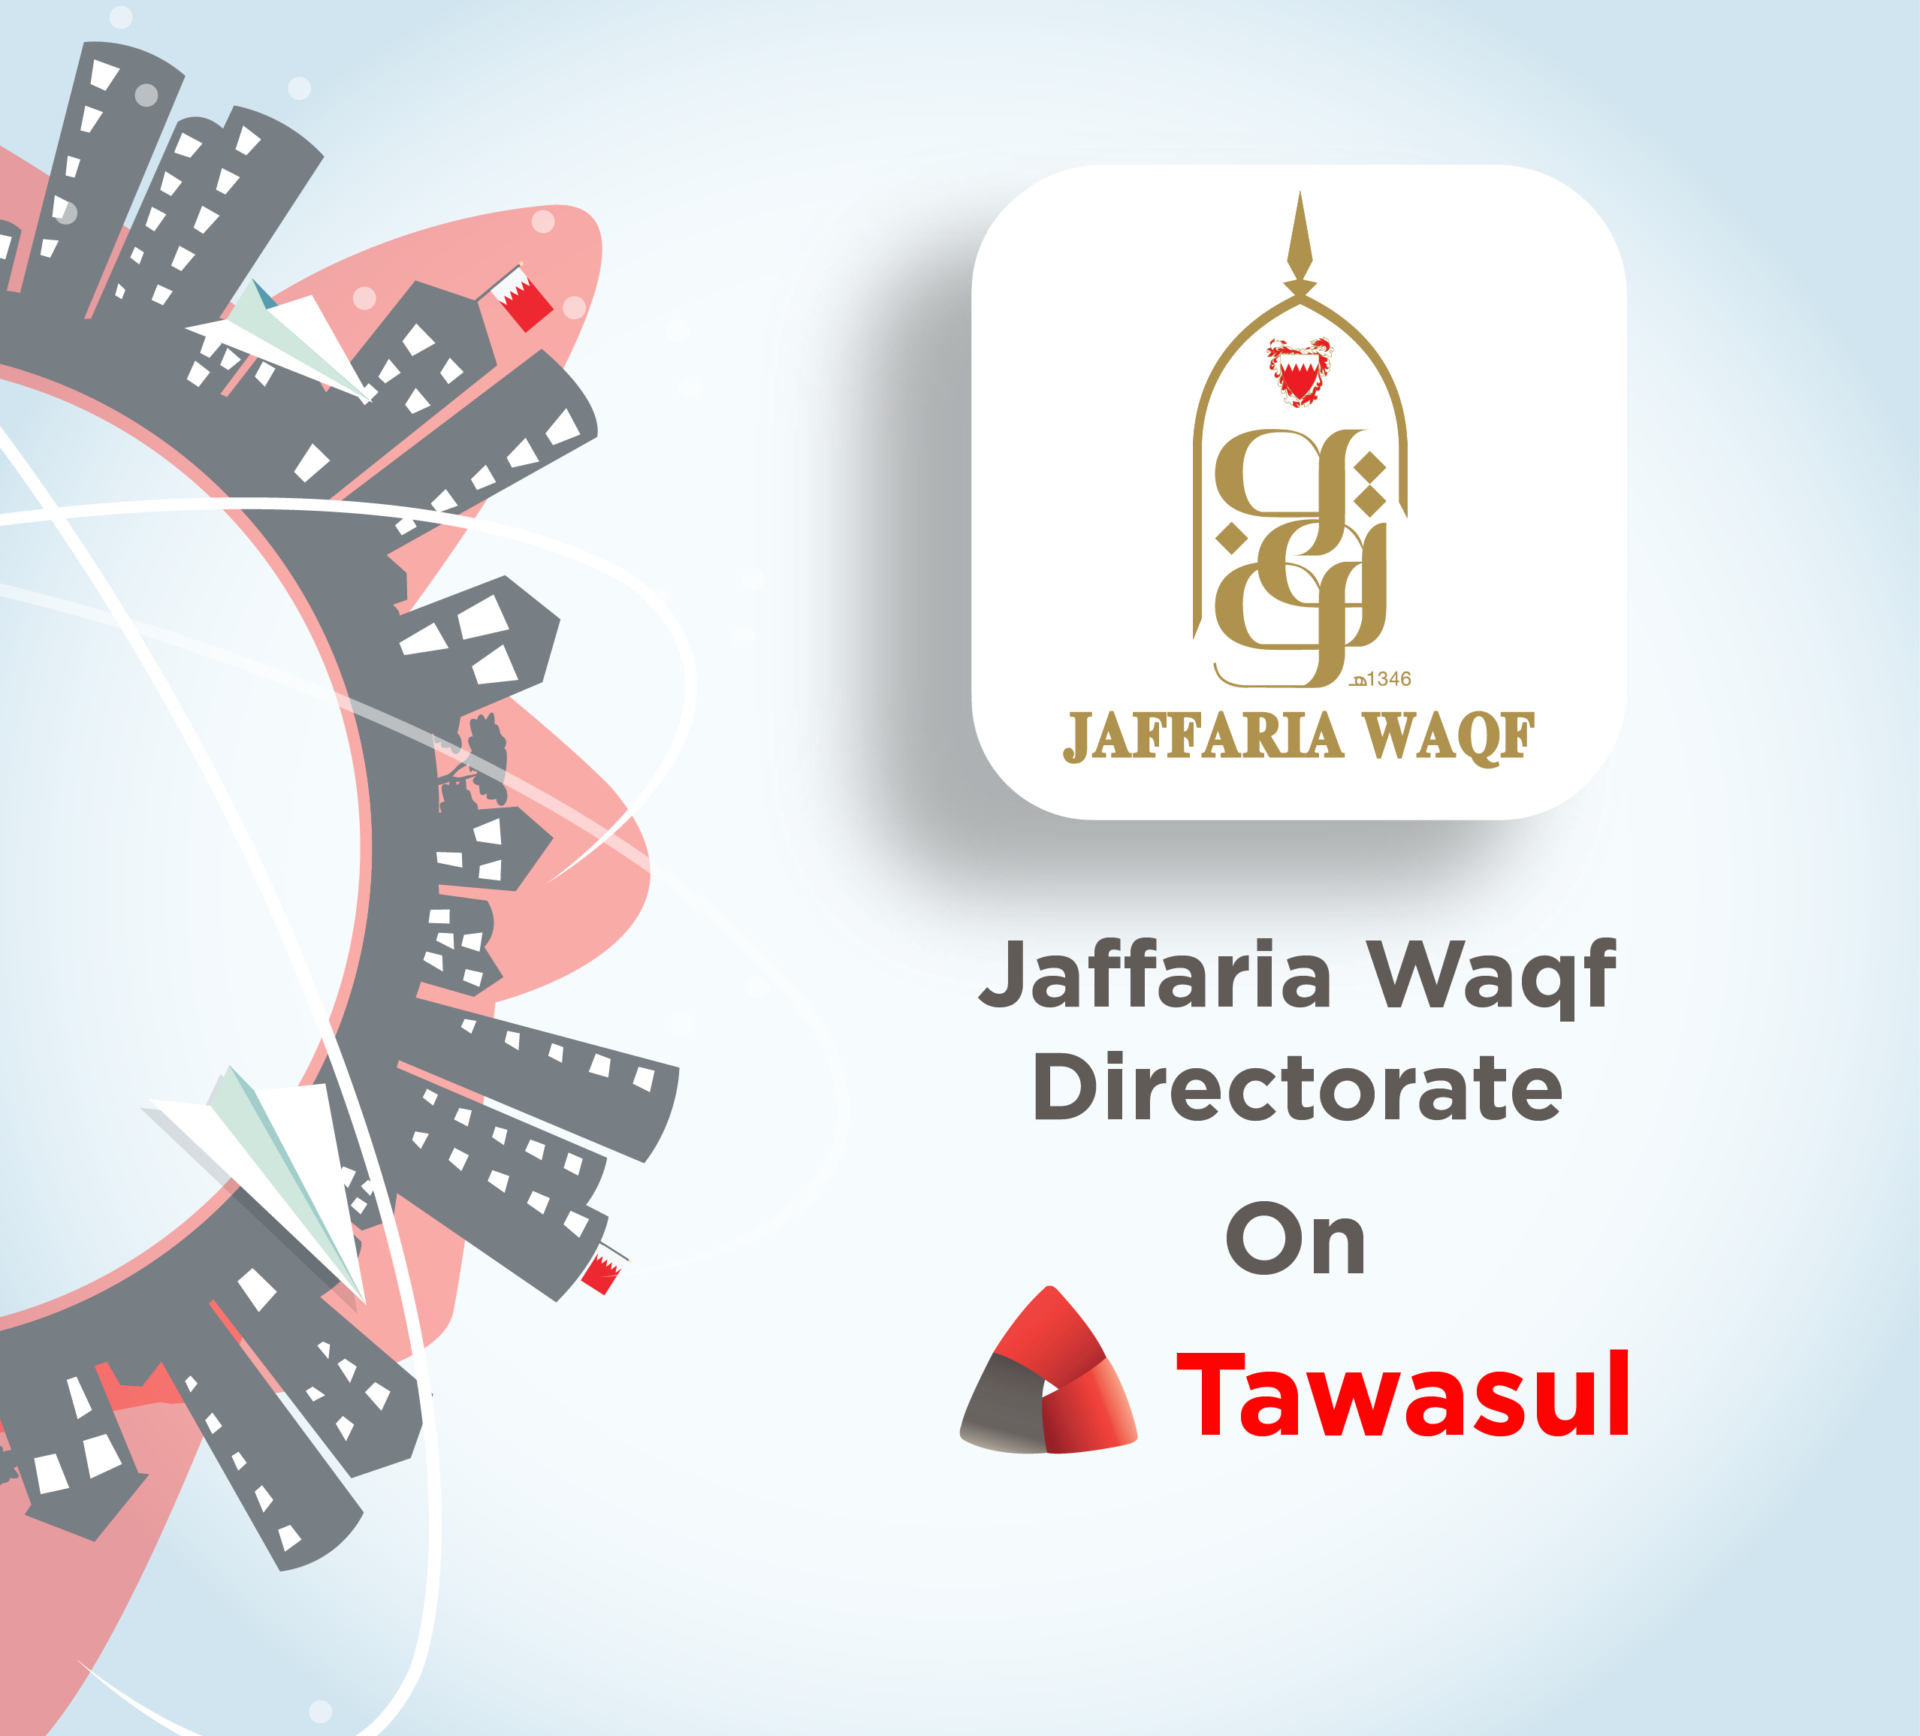 (25-04-2021) Bahrain This Week - Jaffaria Waqf Directorate joins Tawasul